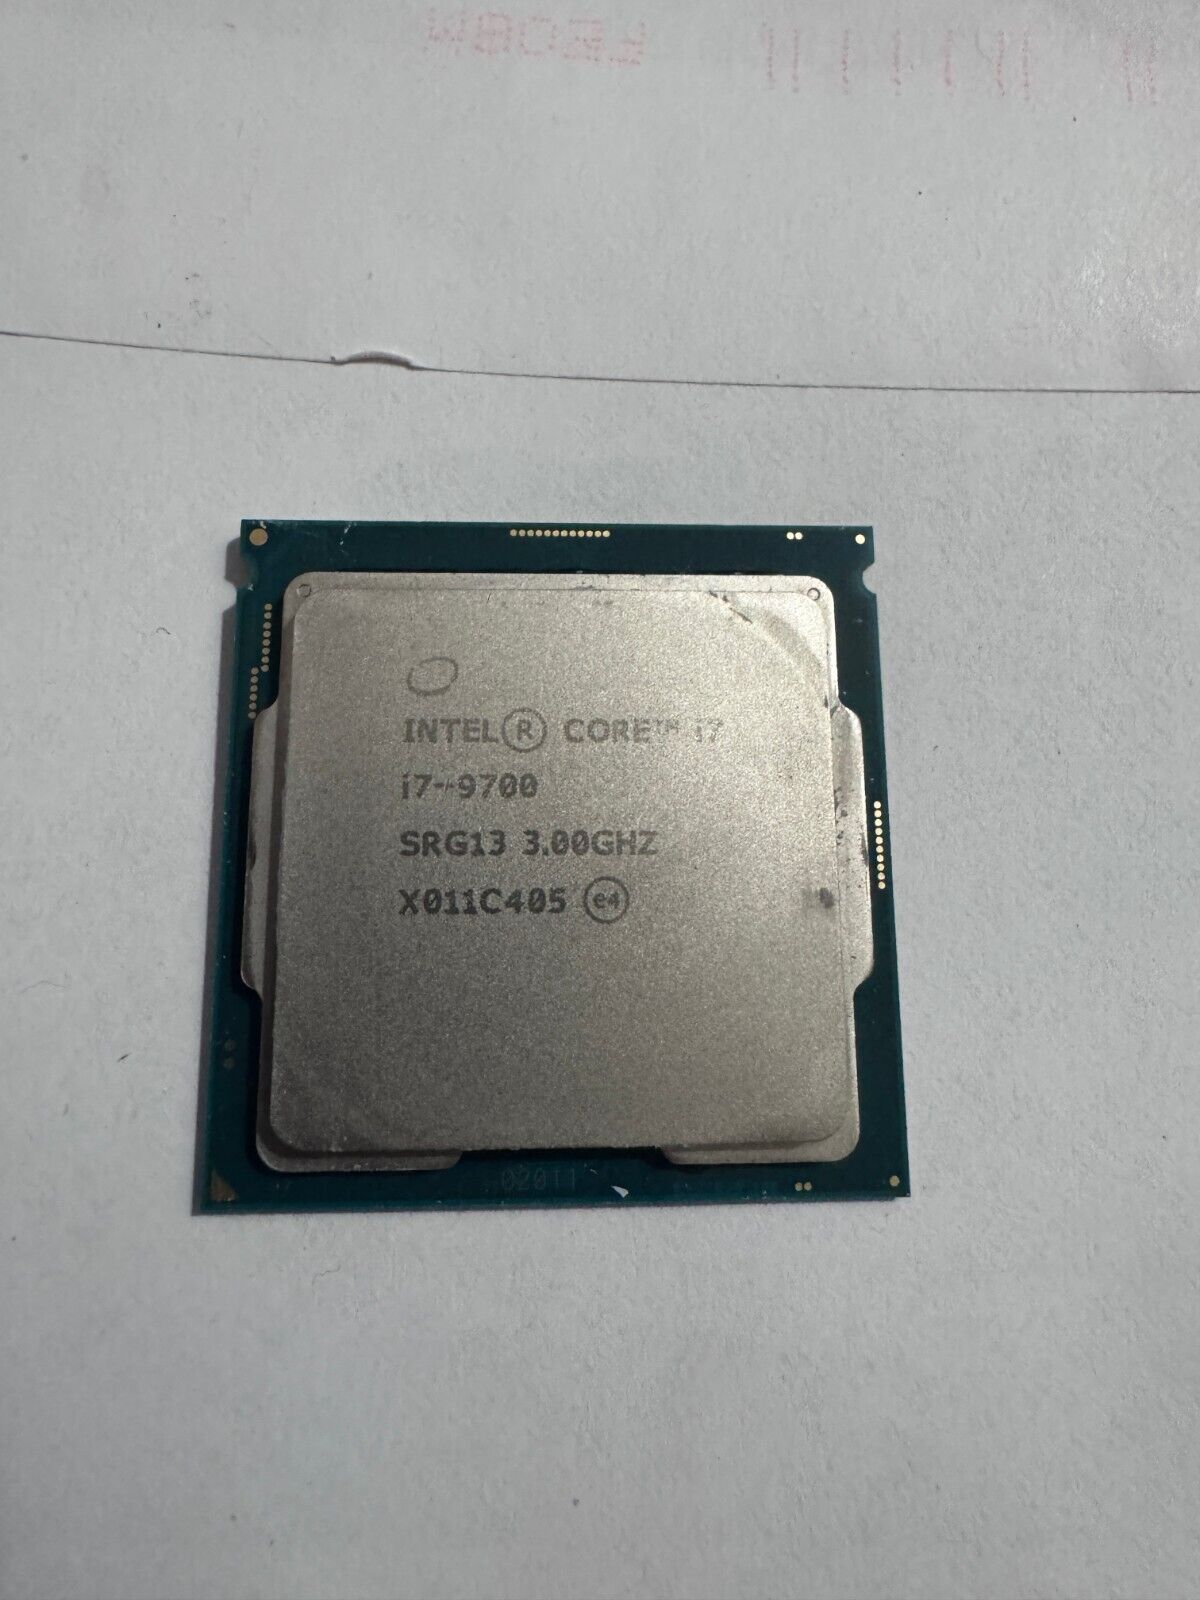 Intel Core i7-9700 3.0 GHz Octo-Core (SRG13) Processor